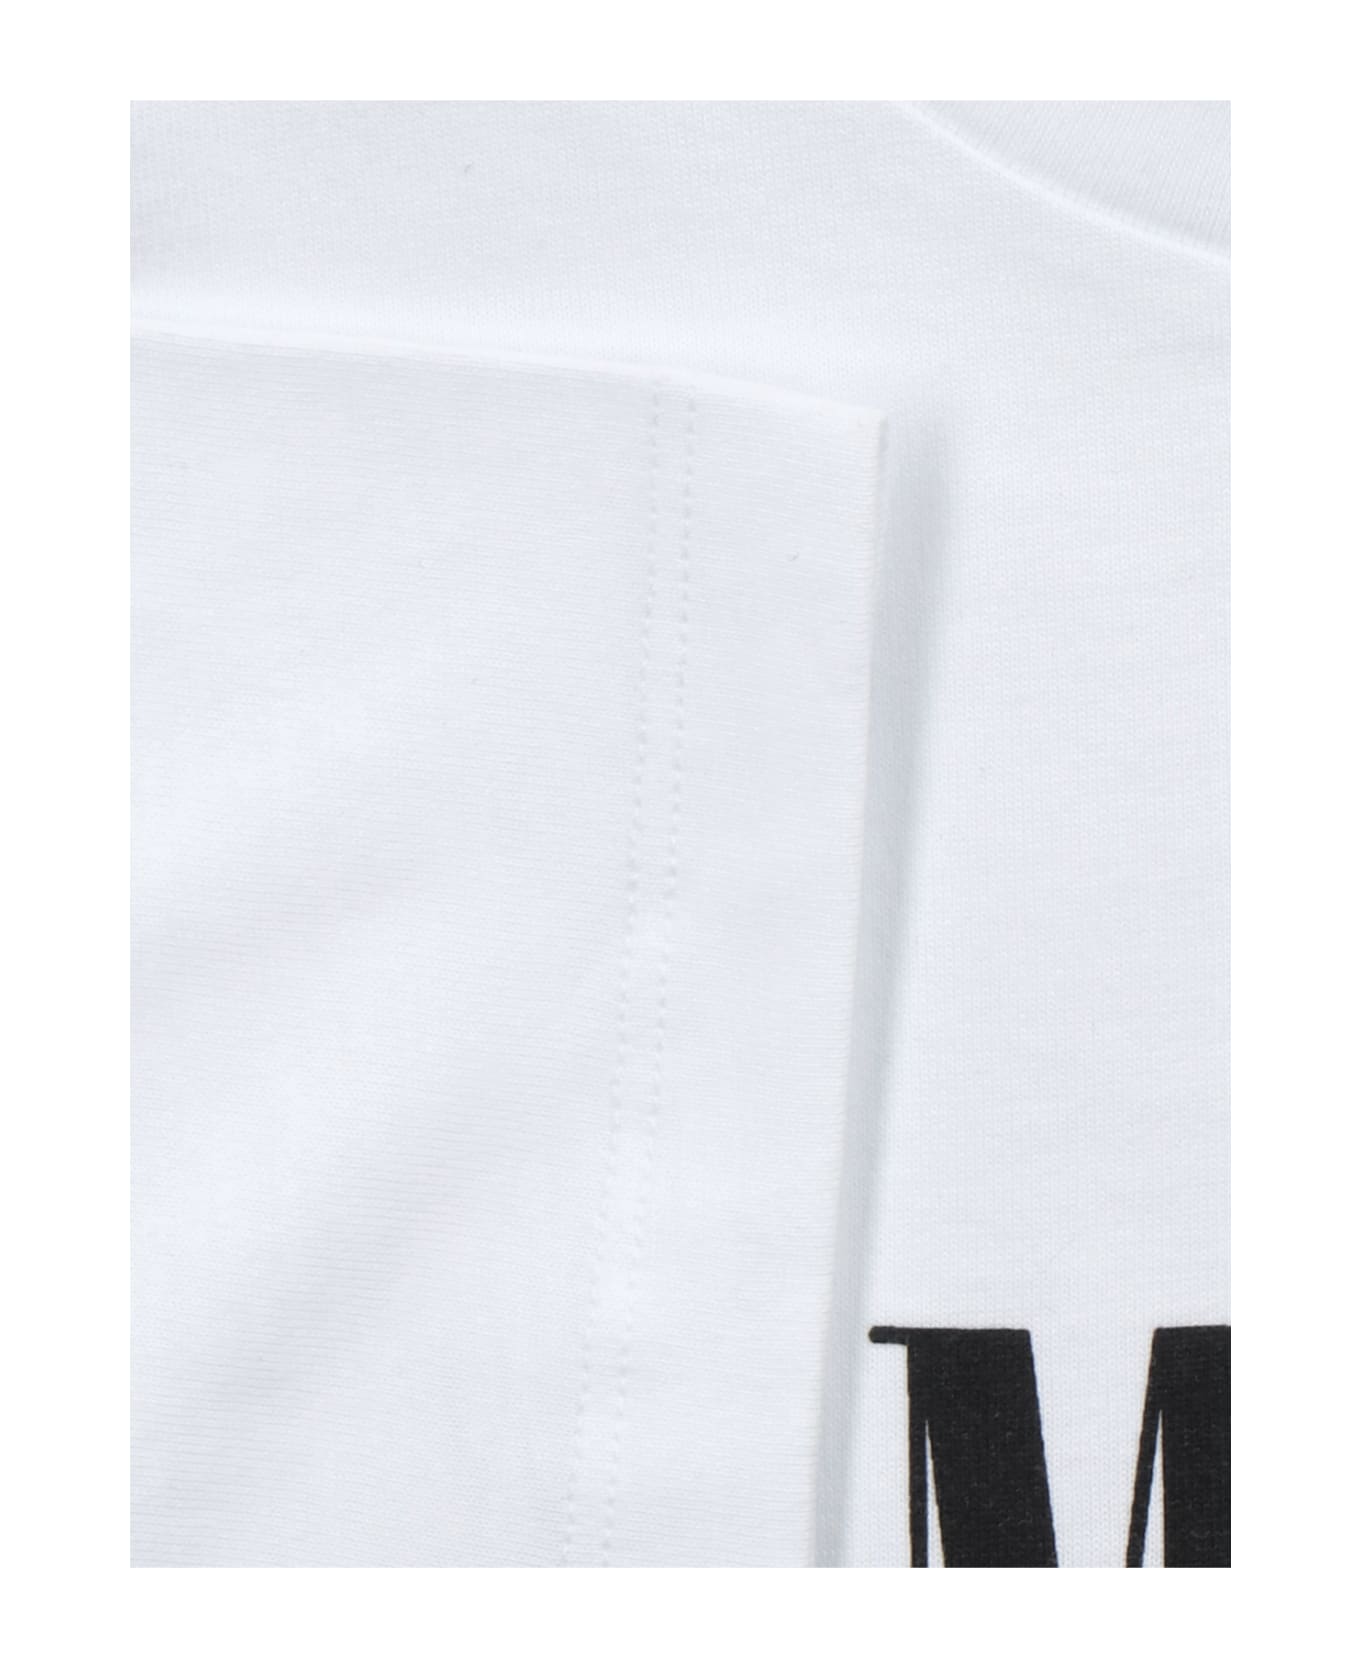 AMIRI Logo T-shirt - White